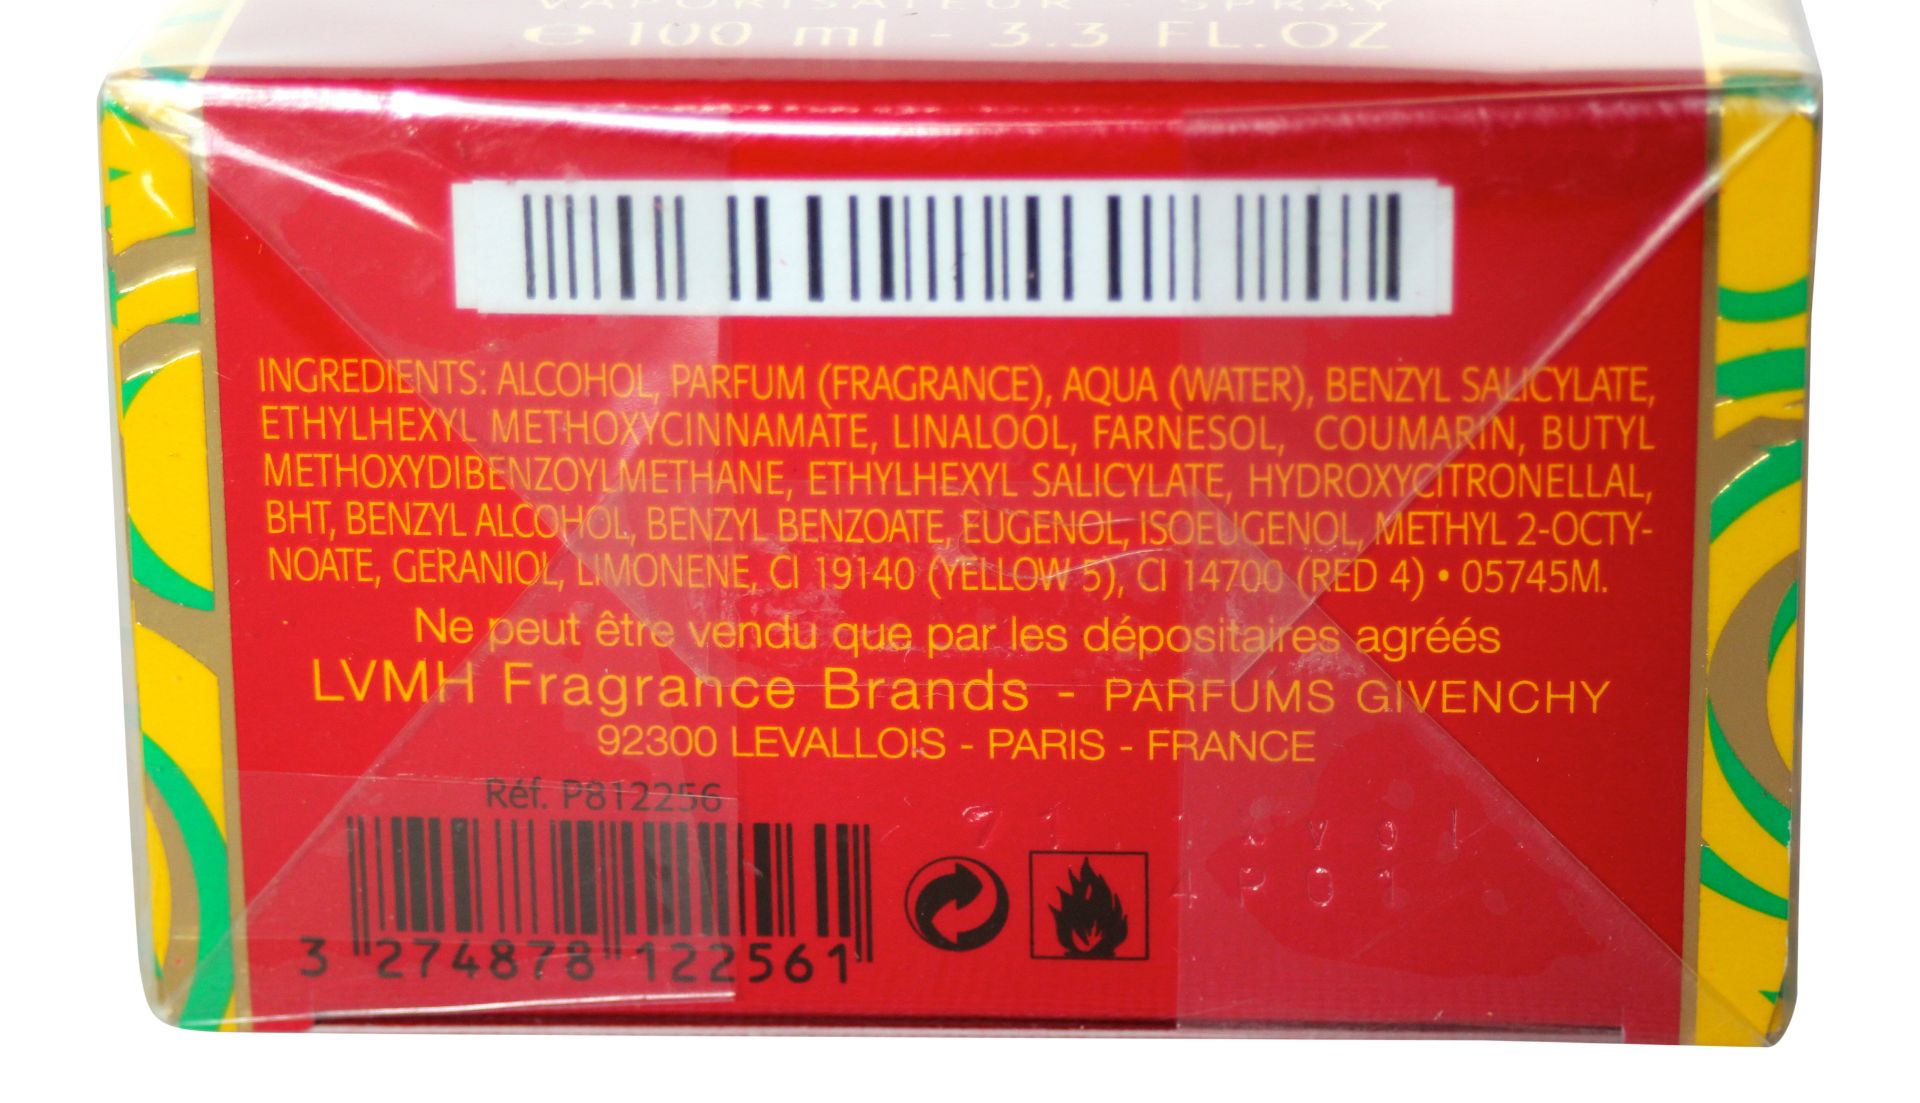 Amarige Givenchy 100ml EDP Spray for Women x 1 Unit - Image 2 of 2